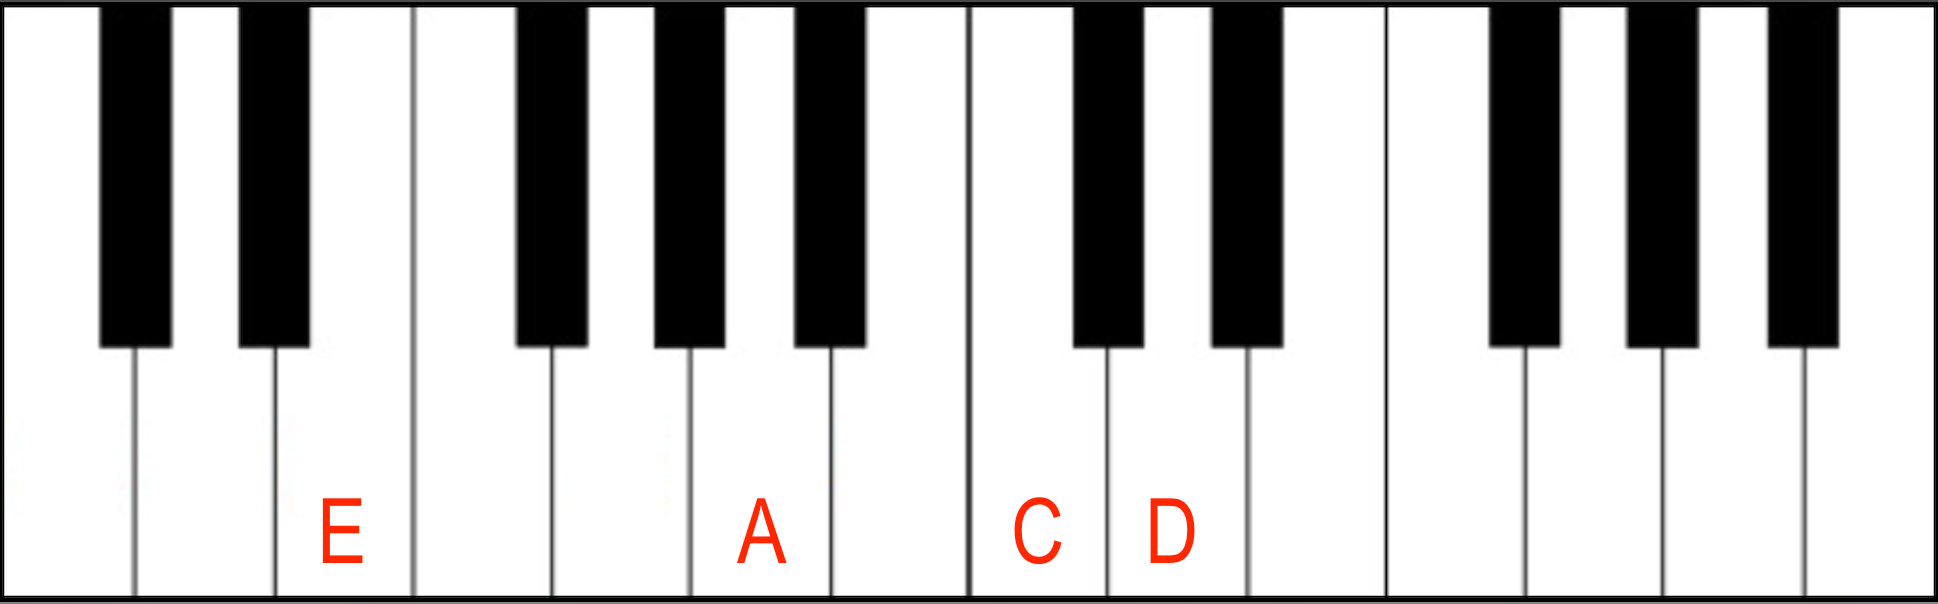 C(6/9) Chord over E